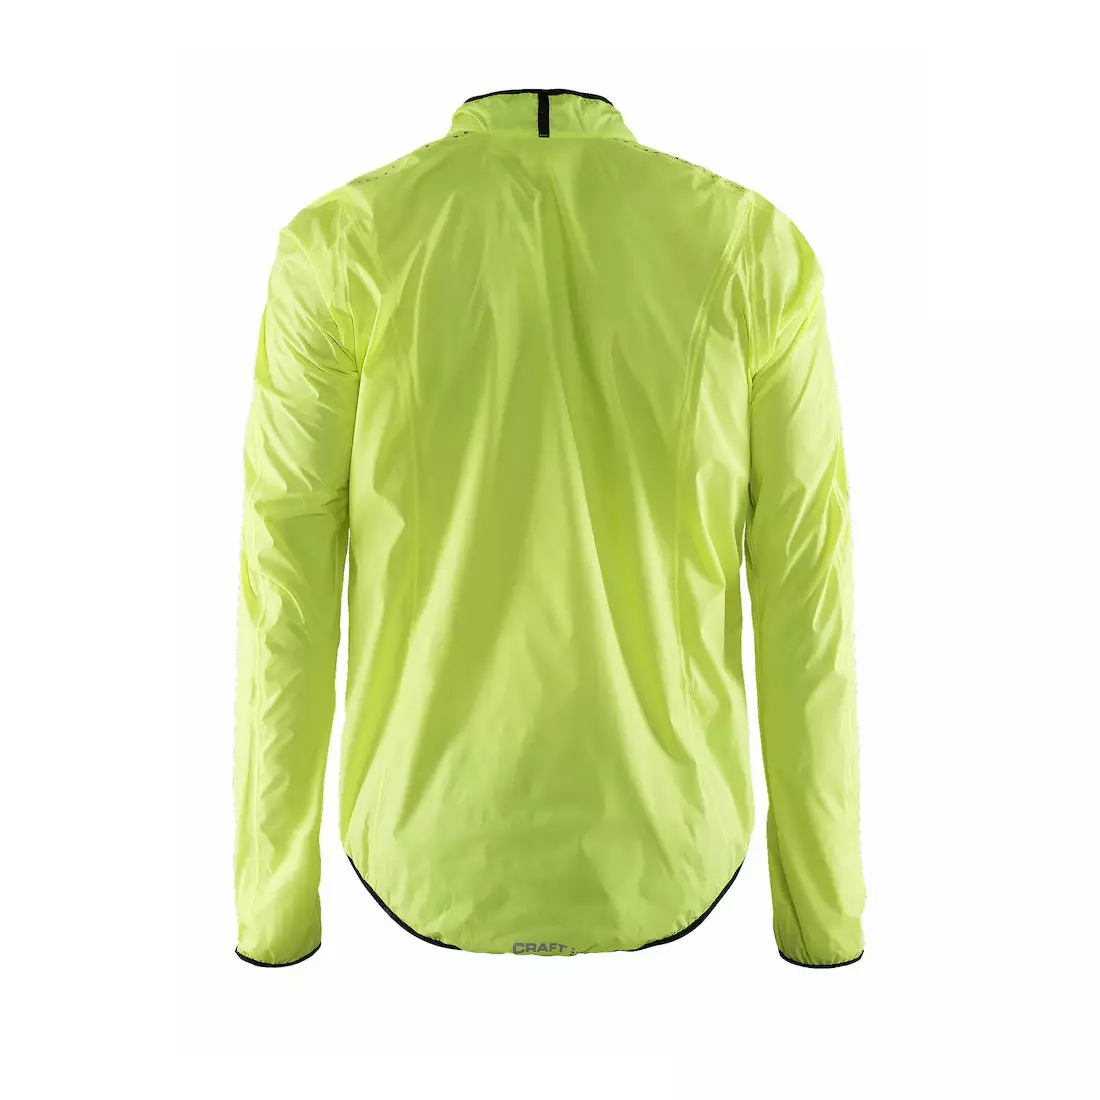 Pánska cyklistická bunda CRAFT MOVE odolná proti dažďu 1902578-2851 farba: fluórová